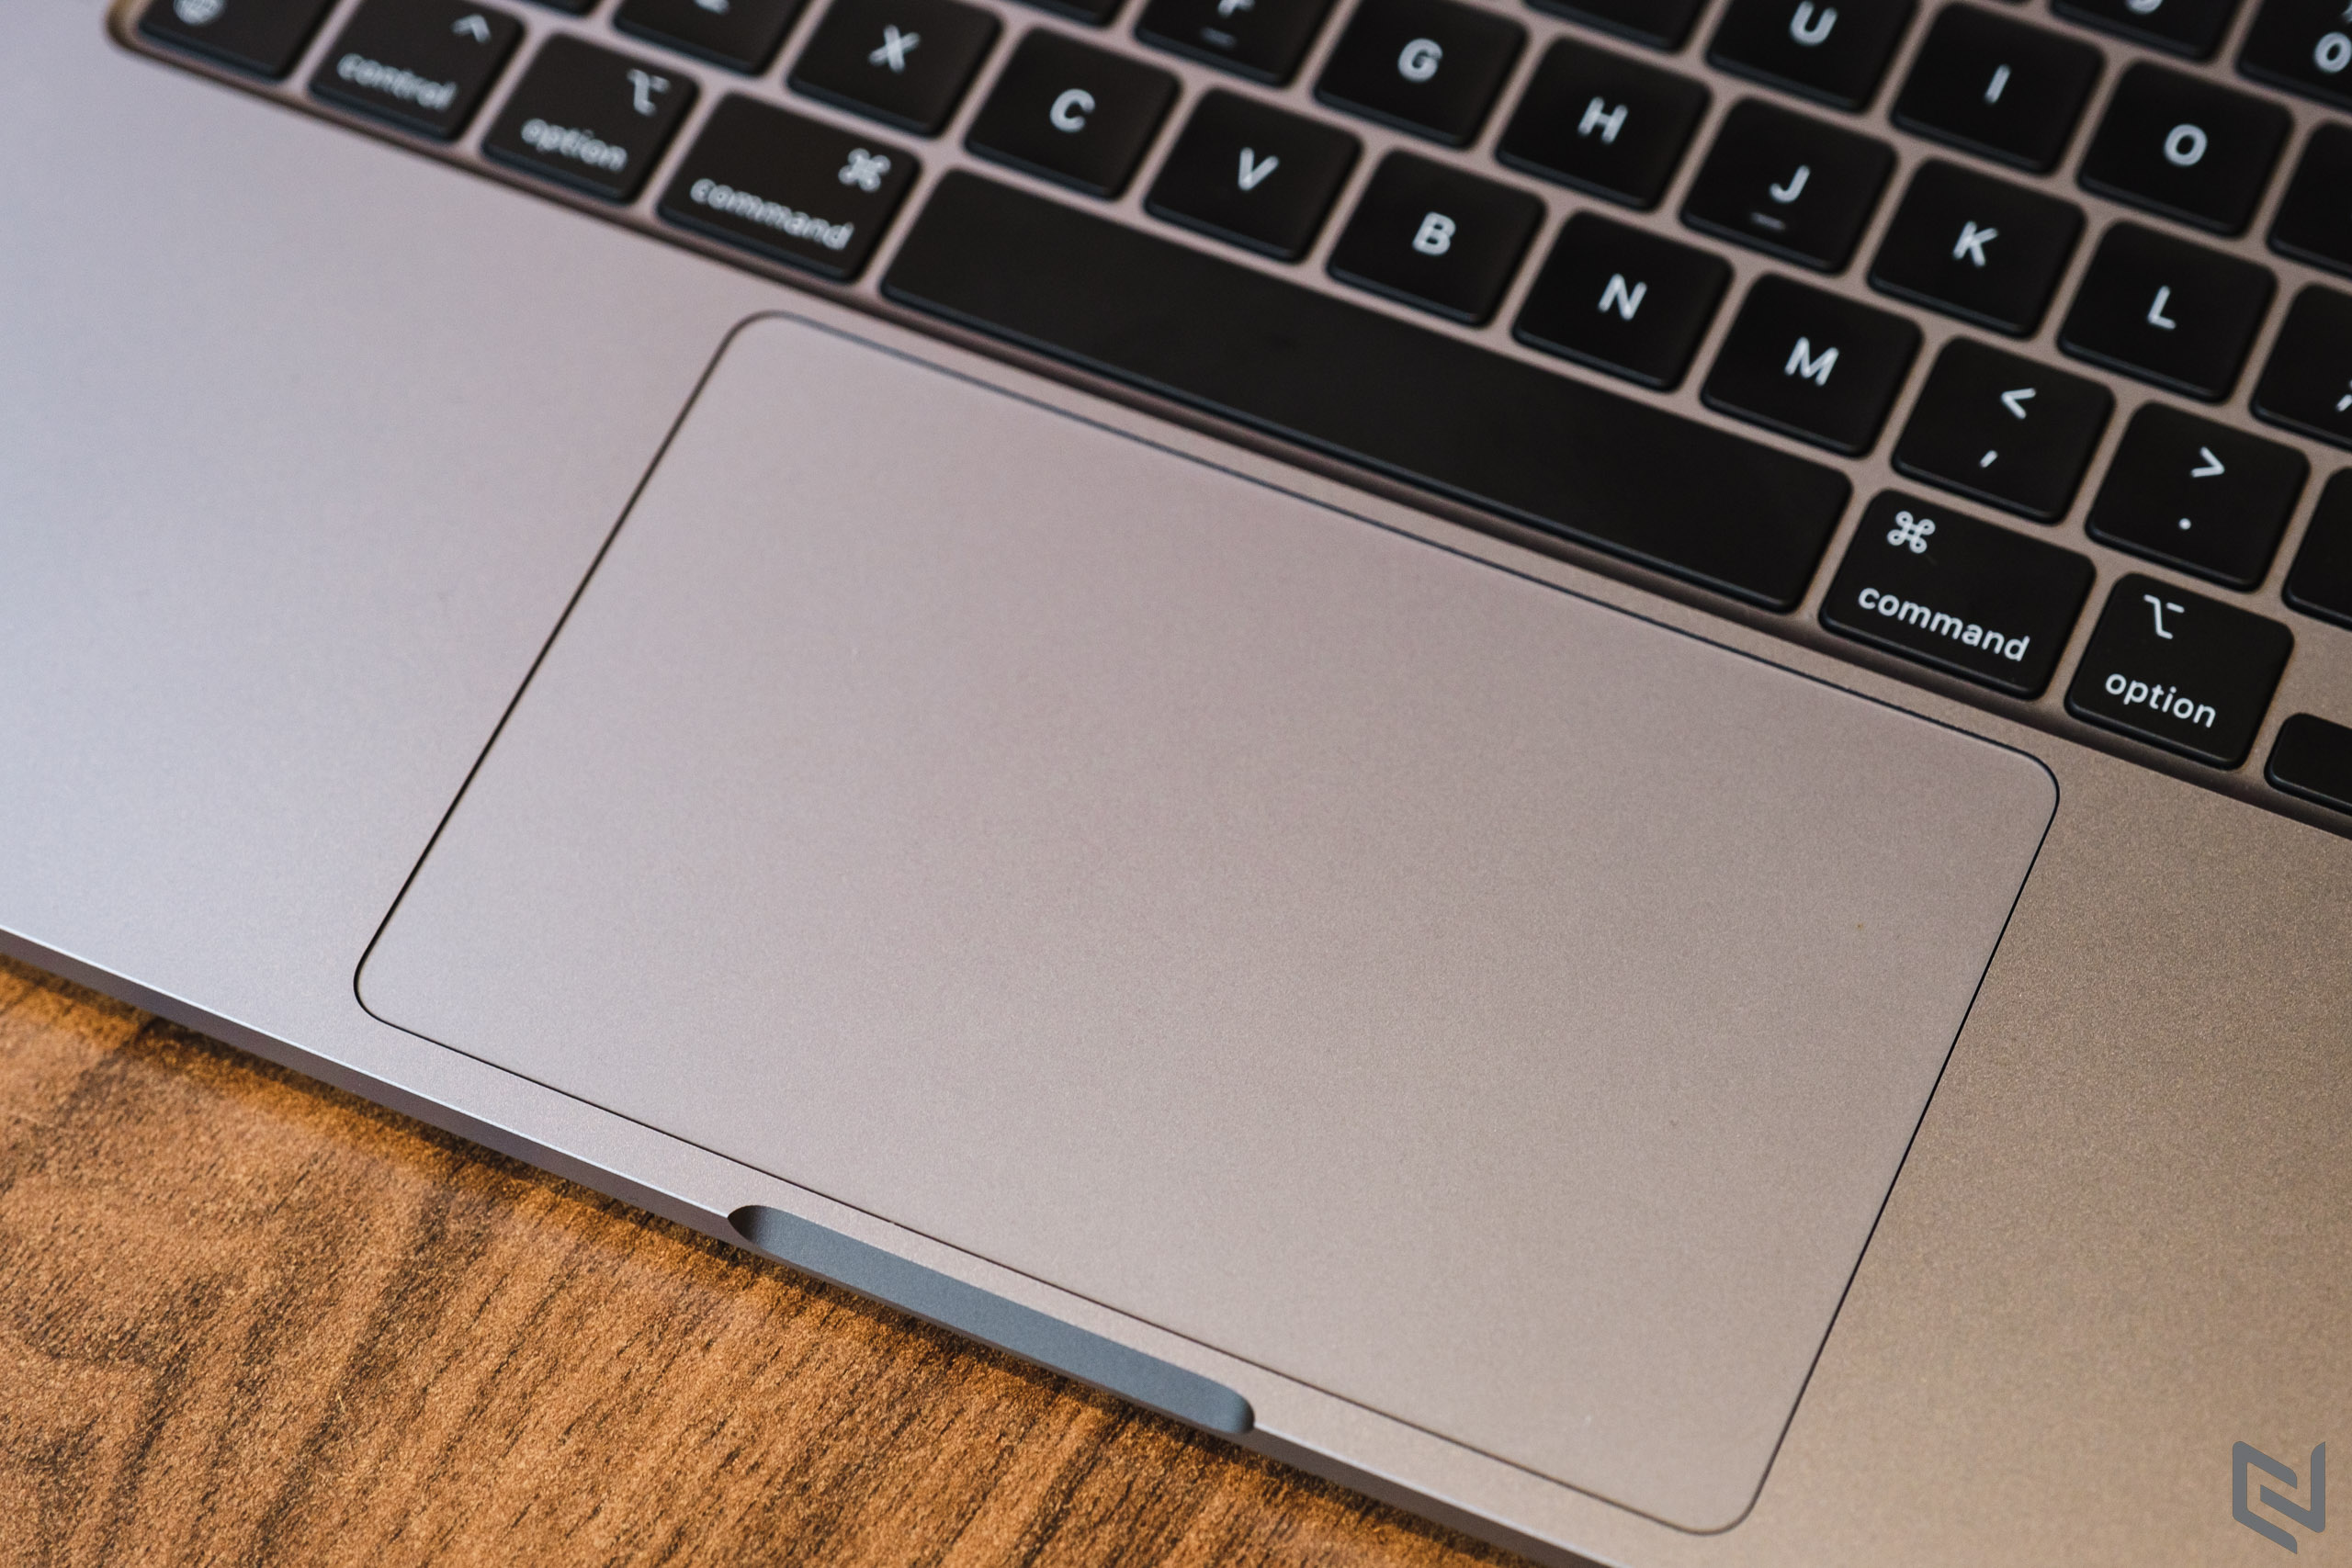 Đánh giá MacBook Pro M2 2022 bản 8GB/256GB: Chọn lựa ưu tiên hiệu năng